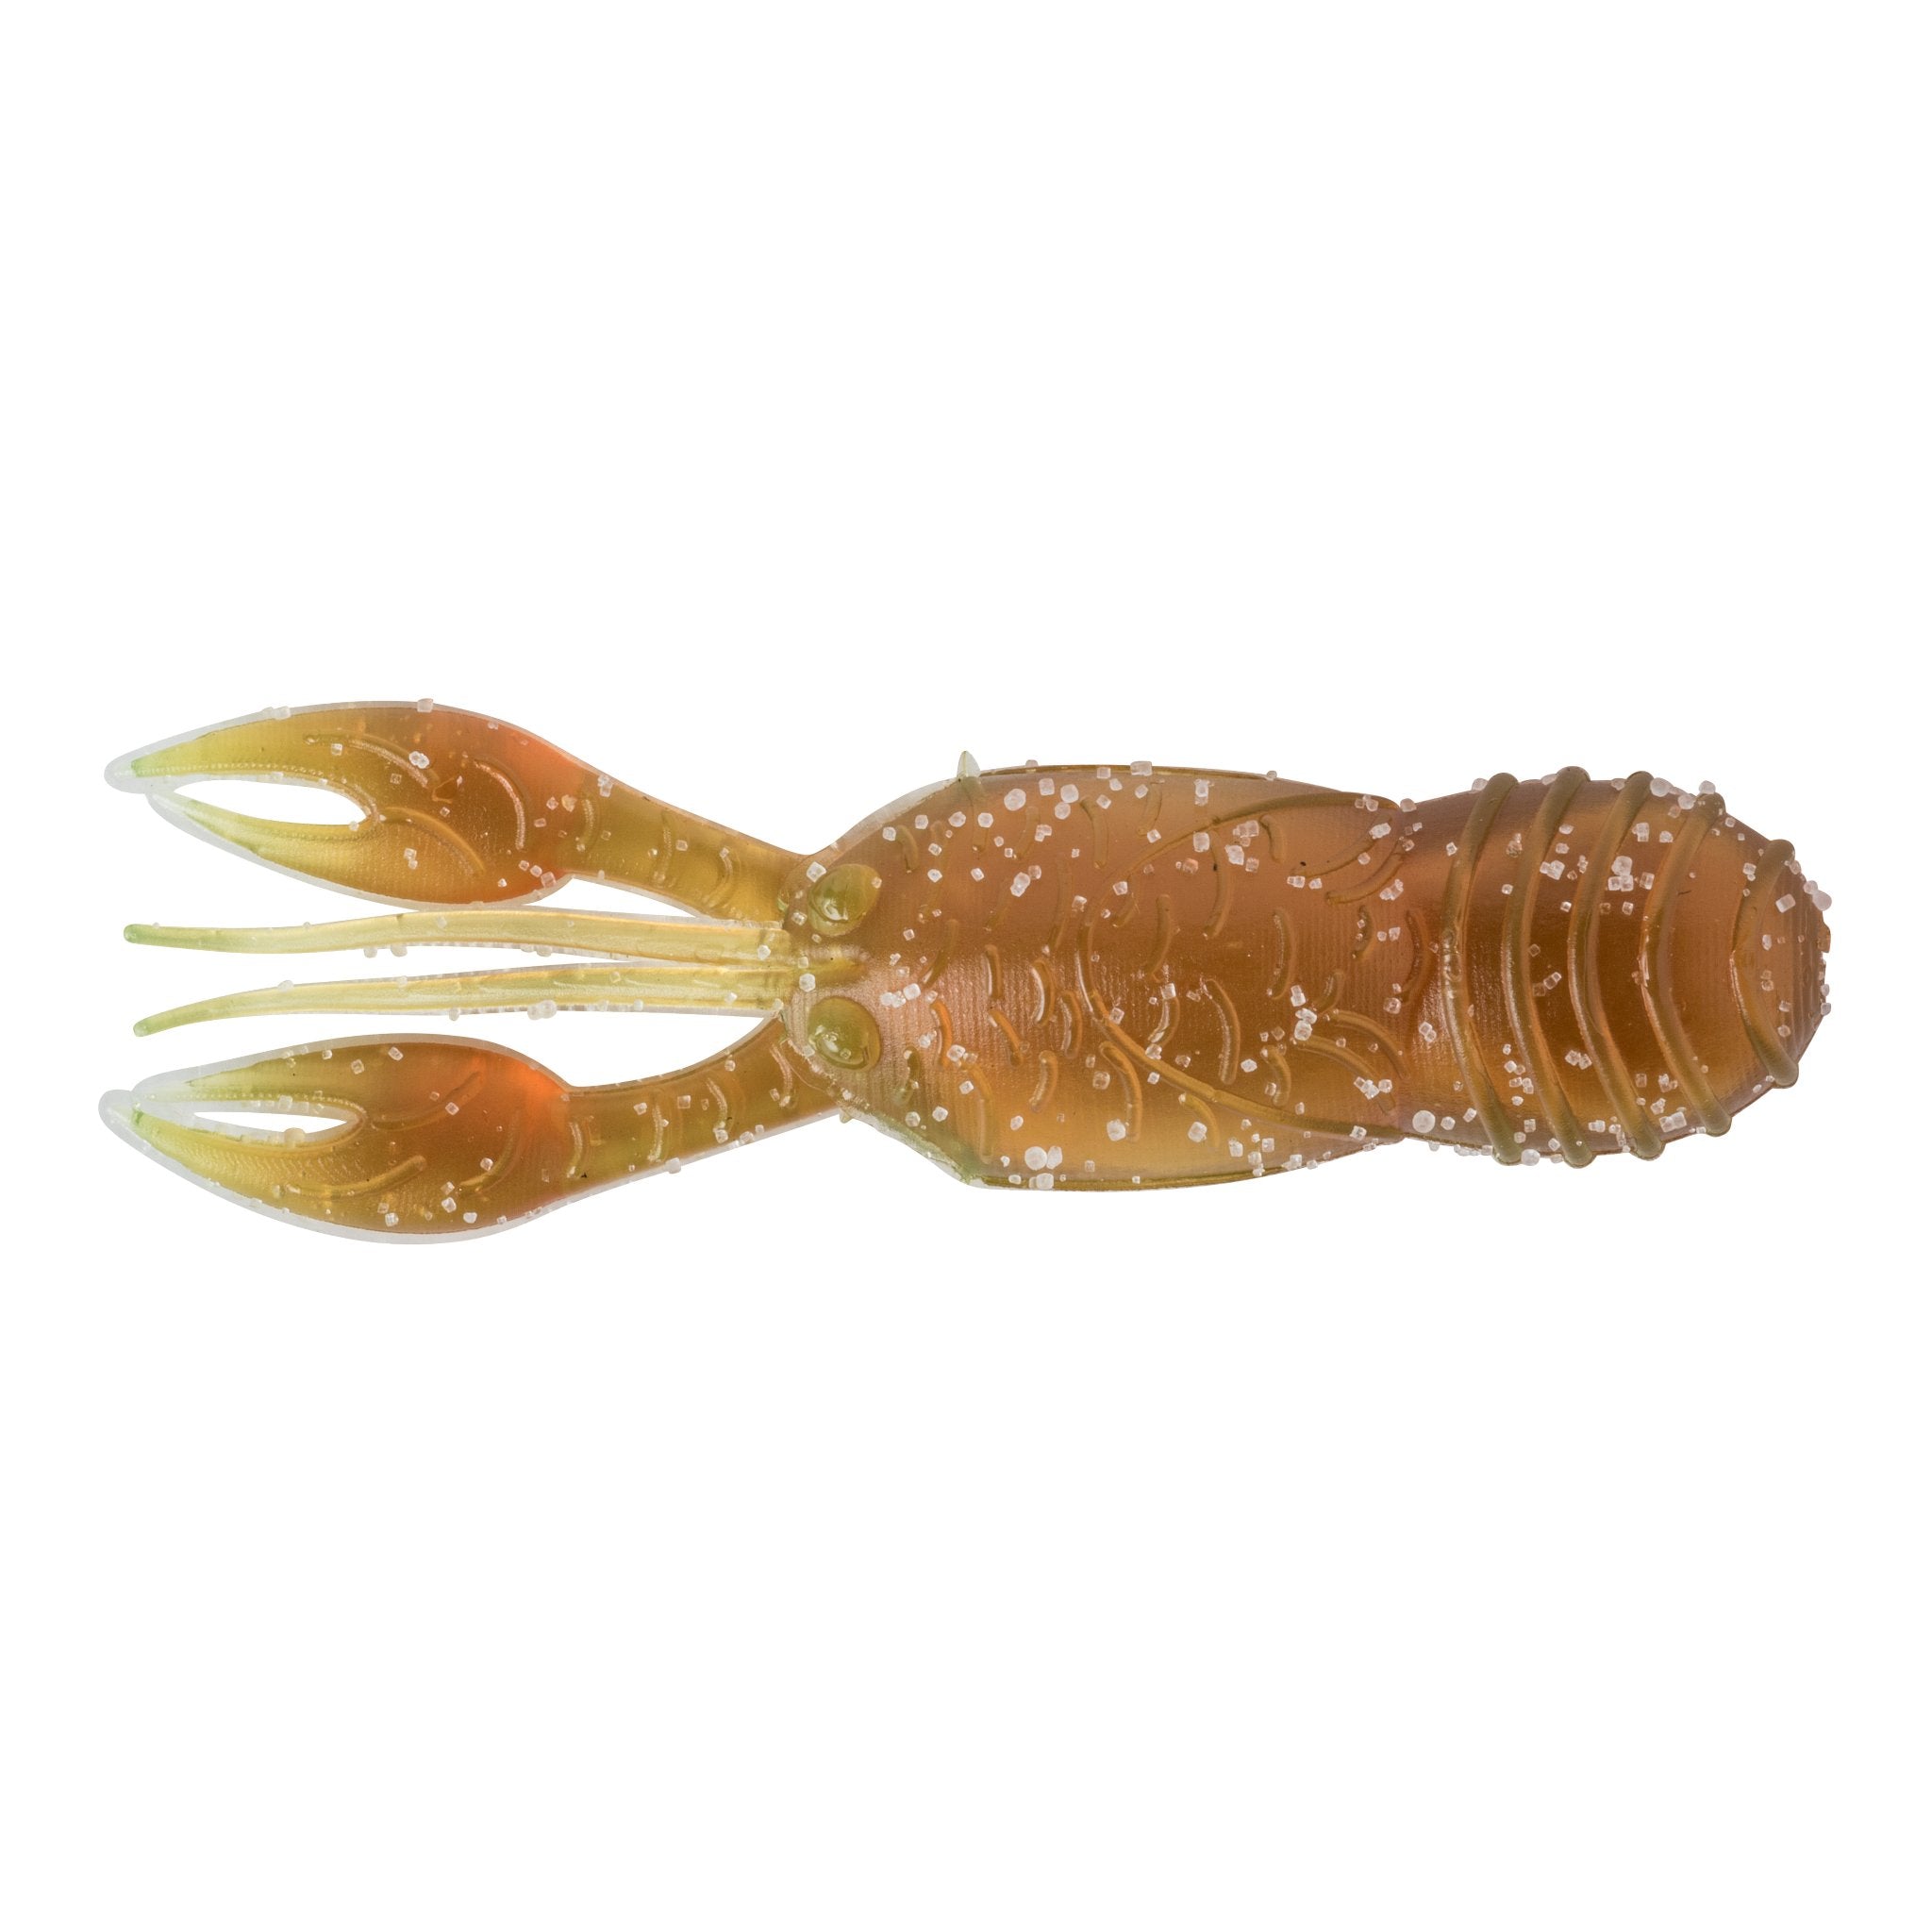 Big Joshy Crawfish Swimbaits & Goby Finesse Bait